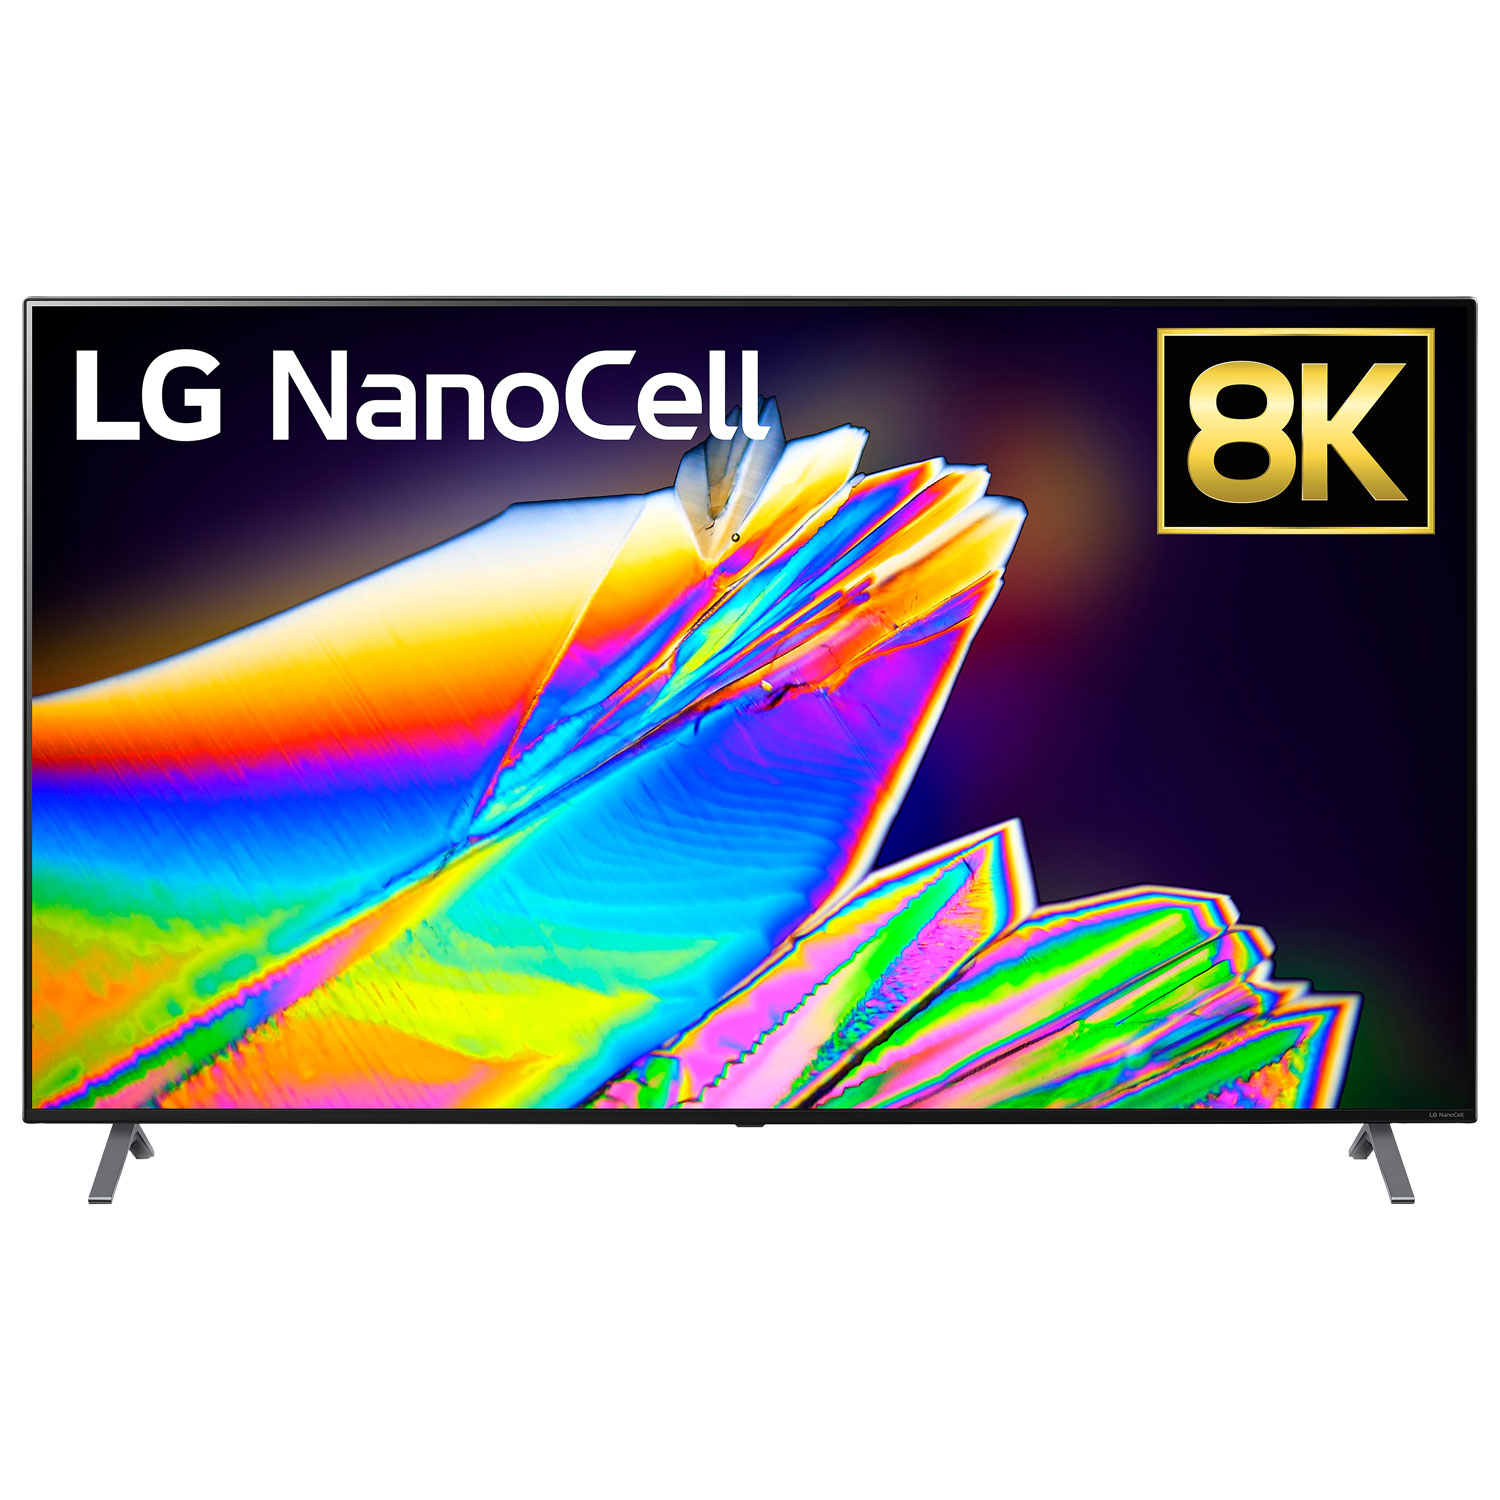 LG NanoCell 75" 8K UHD HDR LED webOS Smart TV (75NANO95) - 2020